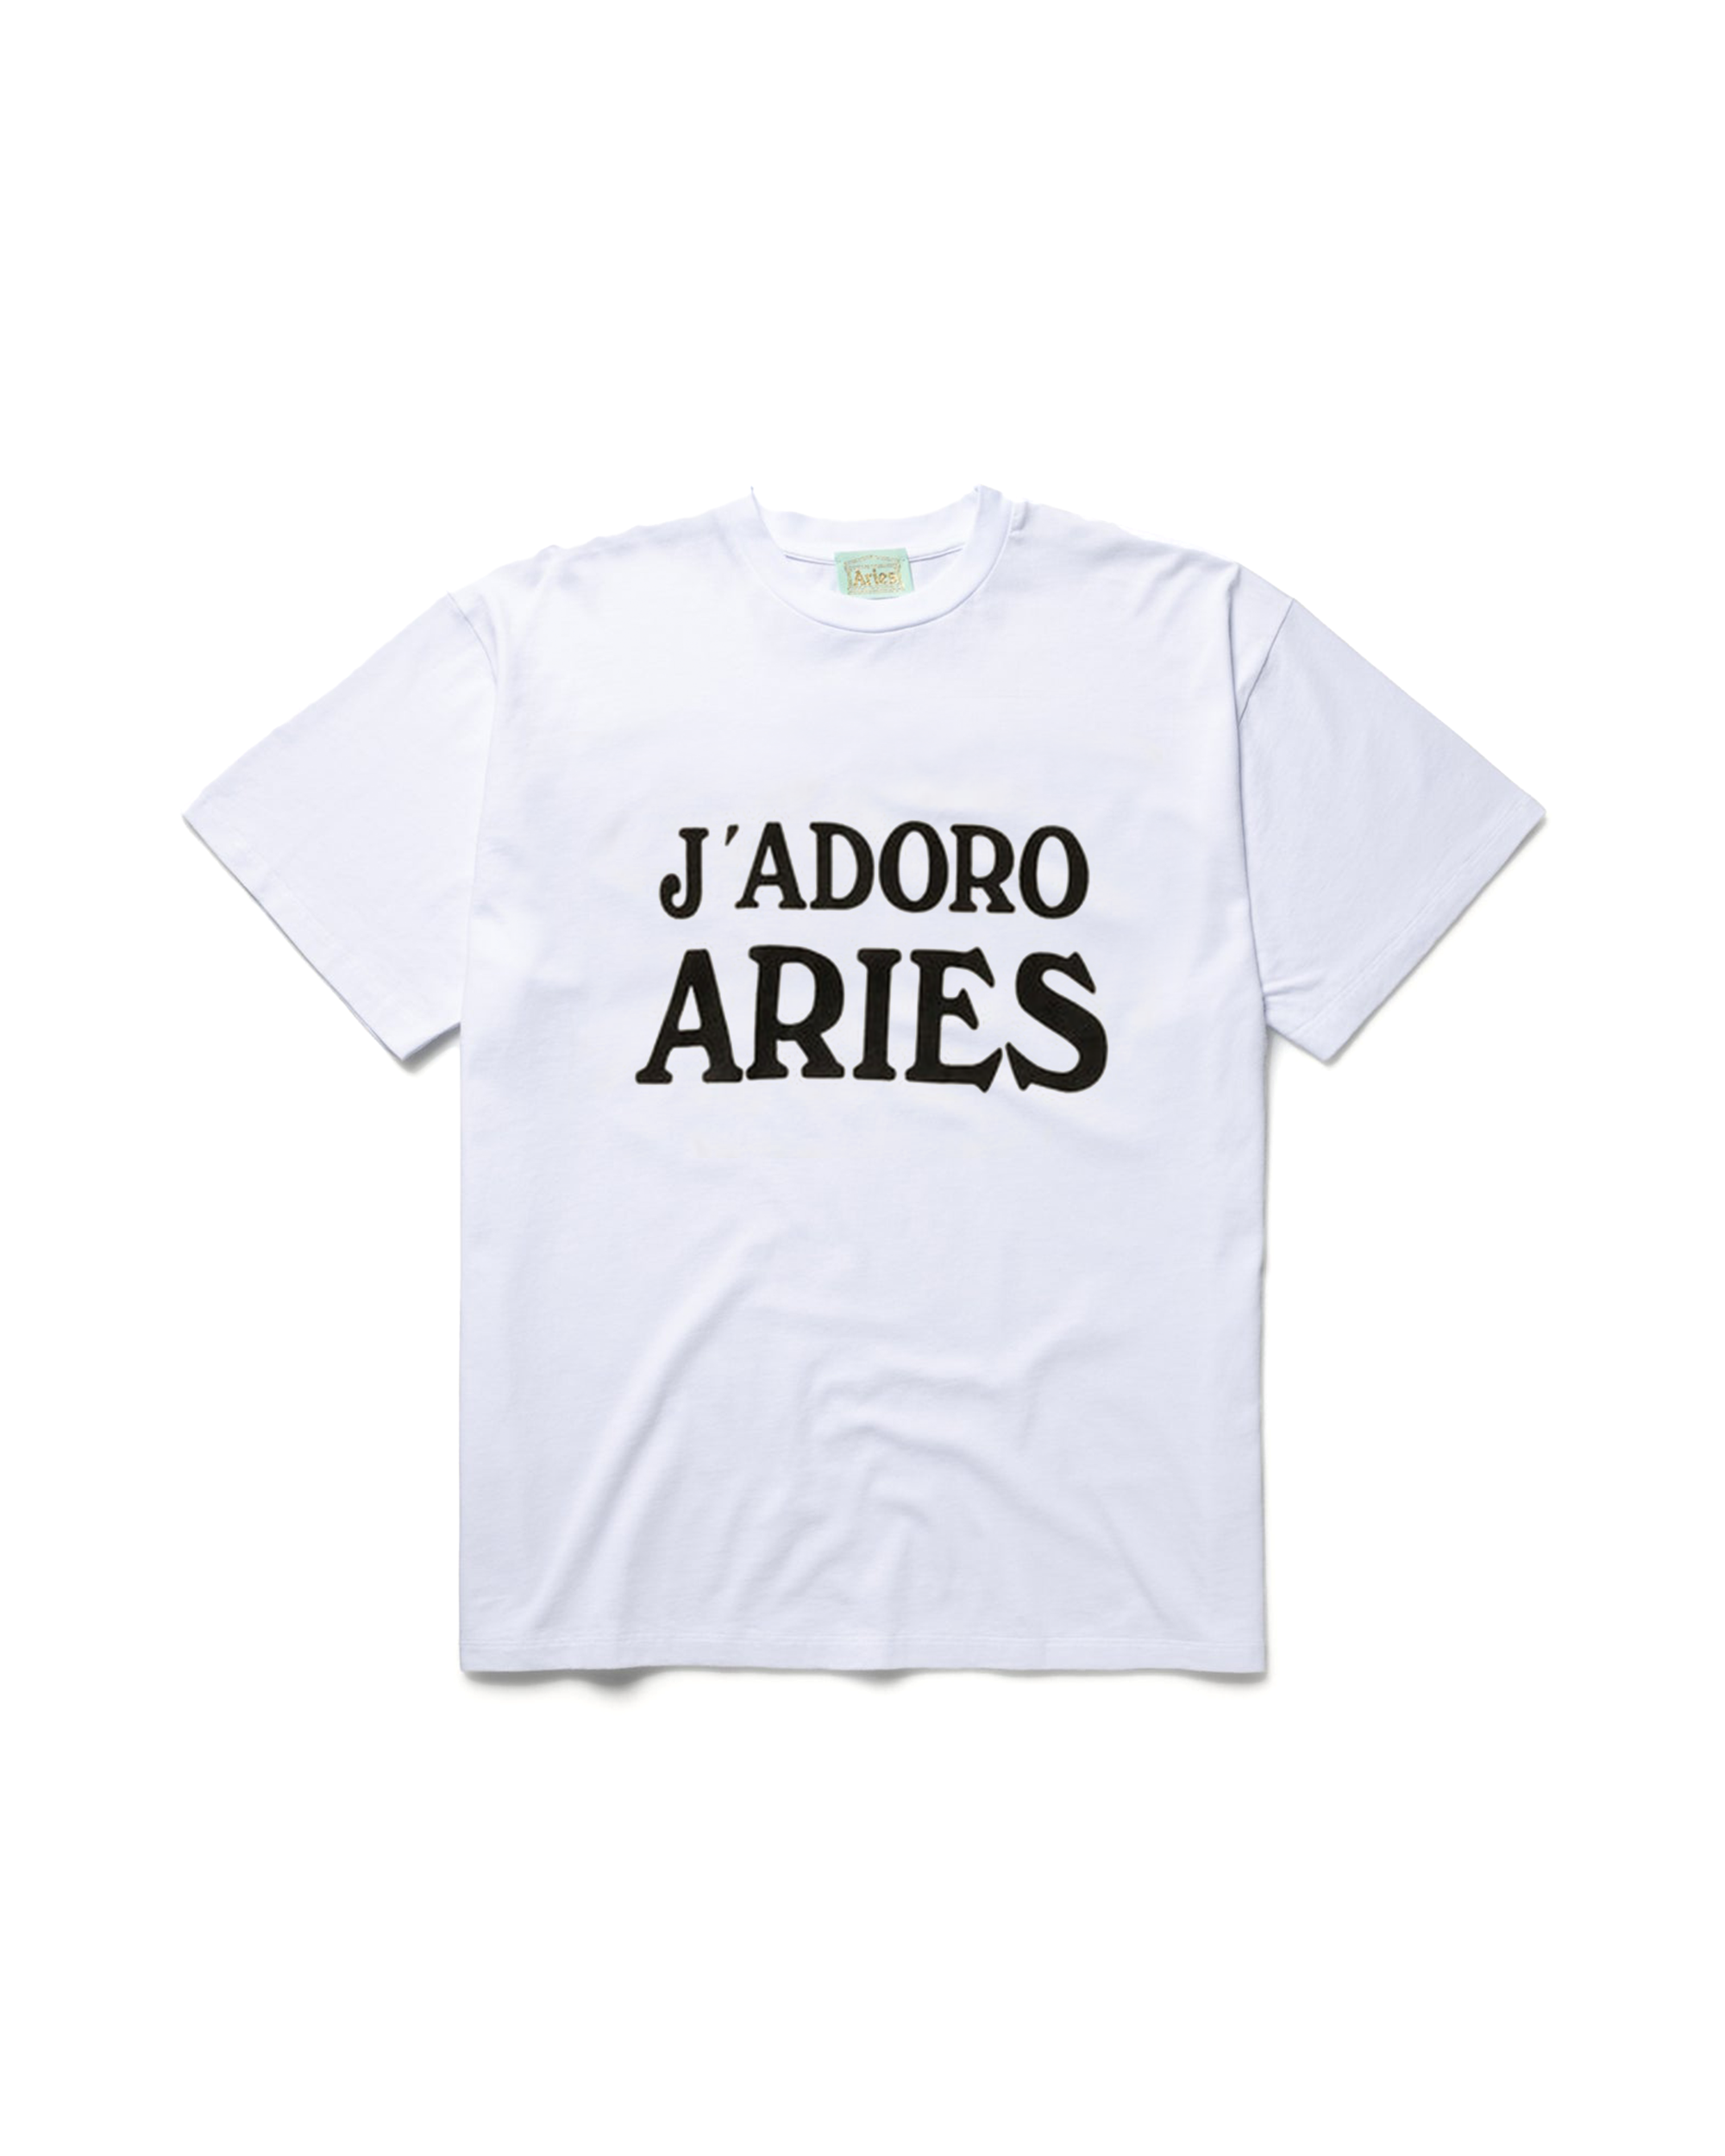 Jadoro Aries T-Shirt - White